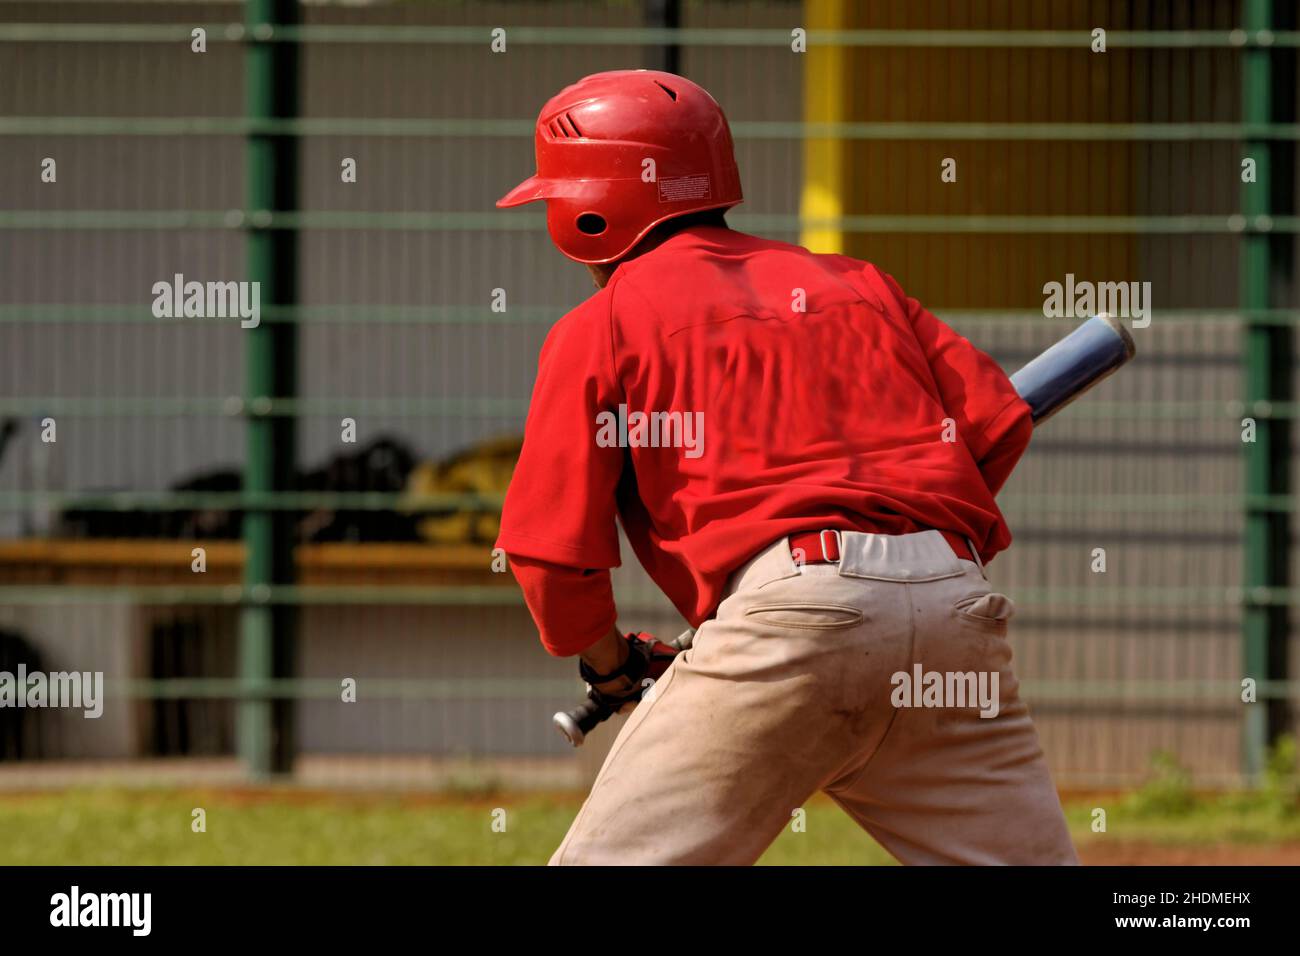 baseball, batter, baseballs Stock Photo